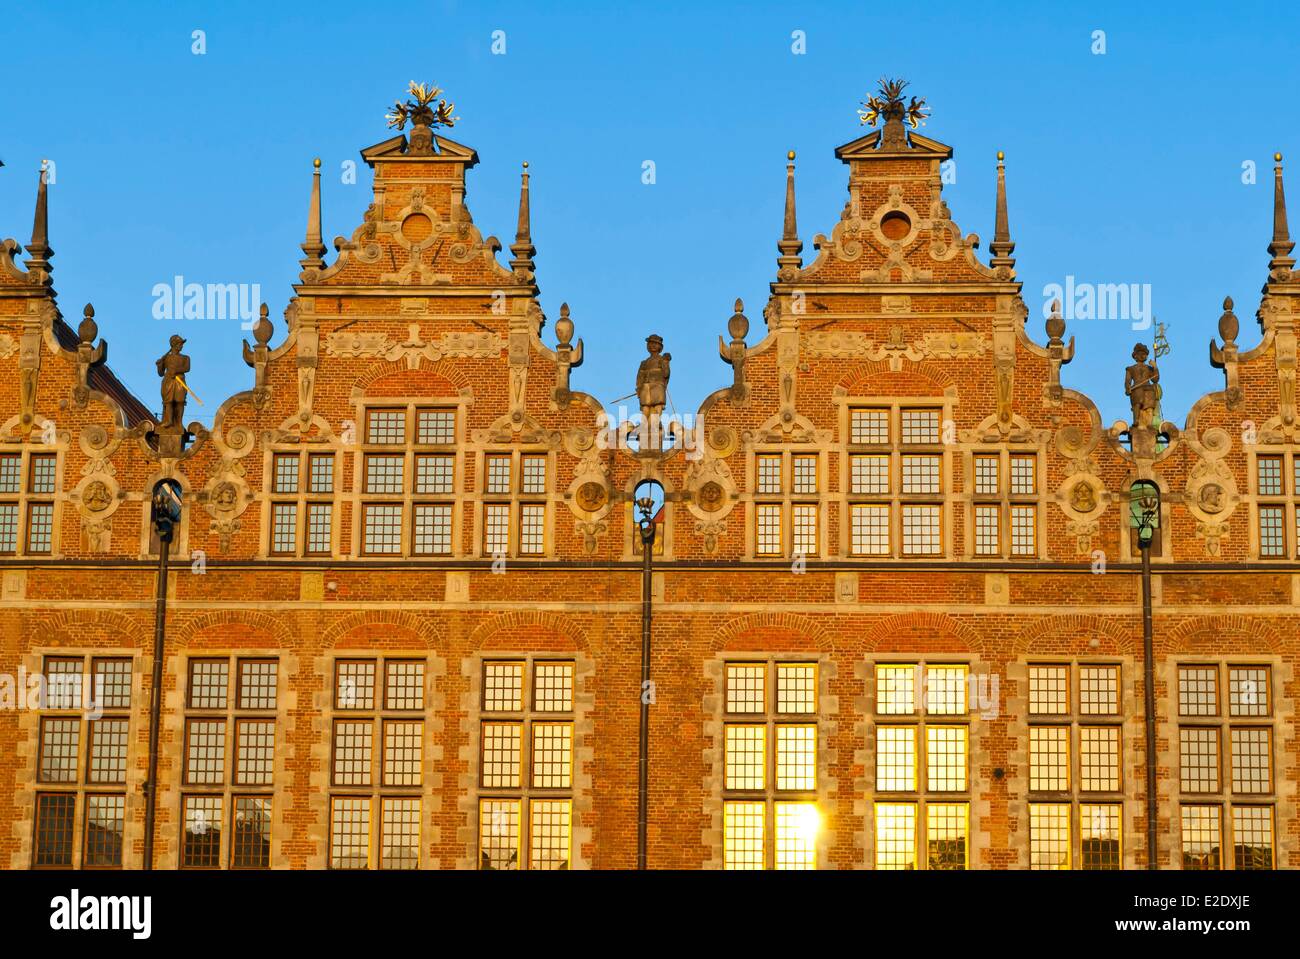 Polonia Pomerania Oriental Gdansk gran arsenal elegante edificio construido en un estilo Renacentista flamenca entre 1600 y 1605 Foto de stock